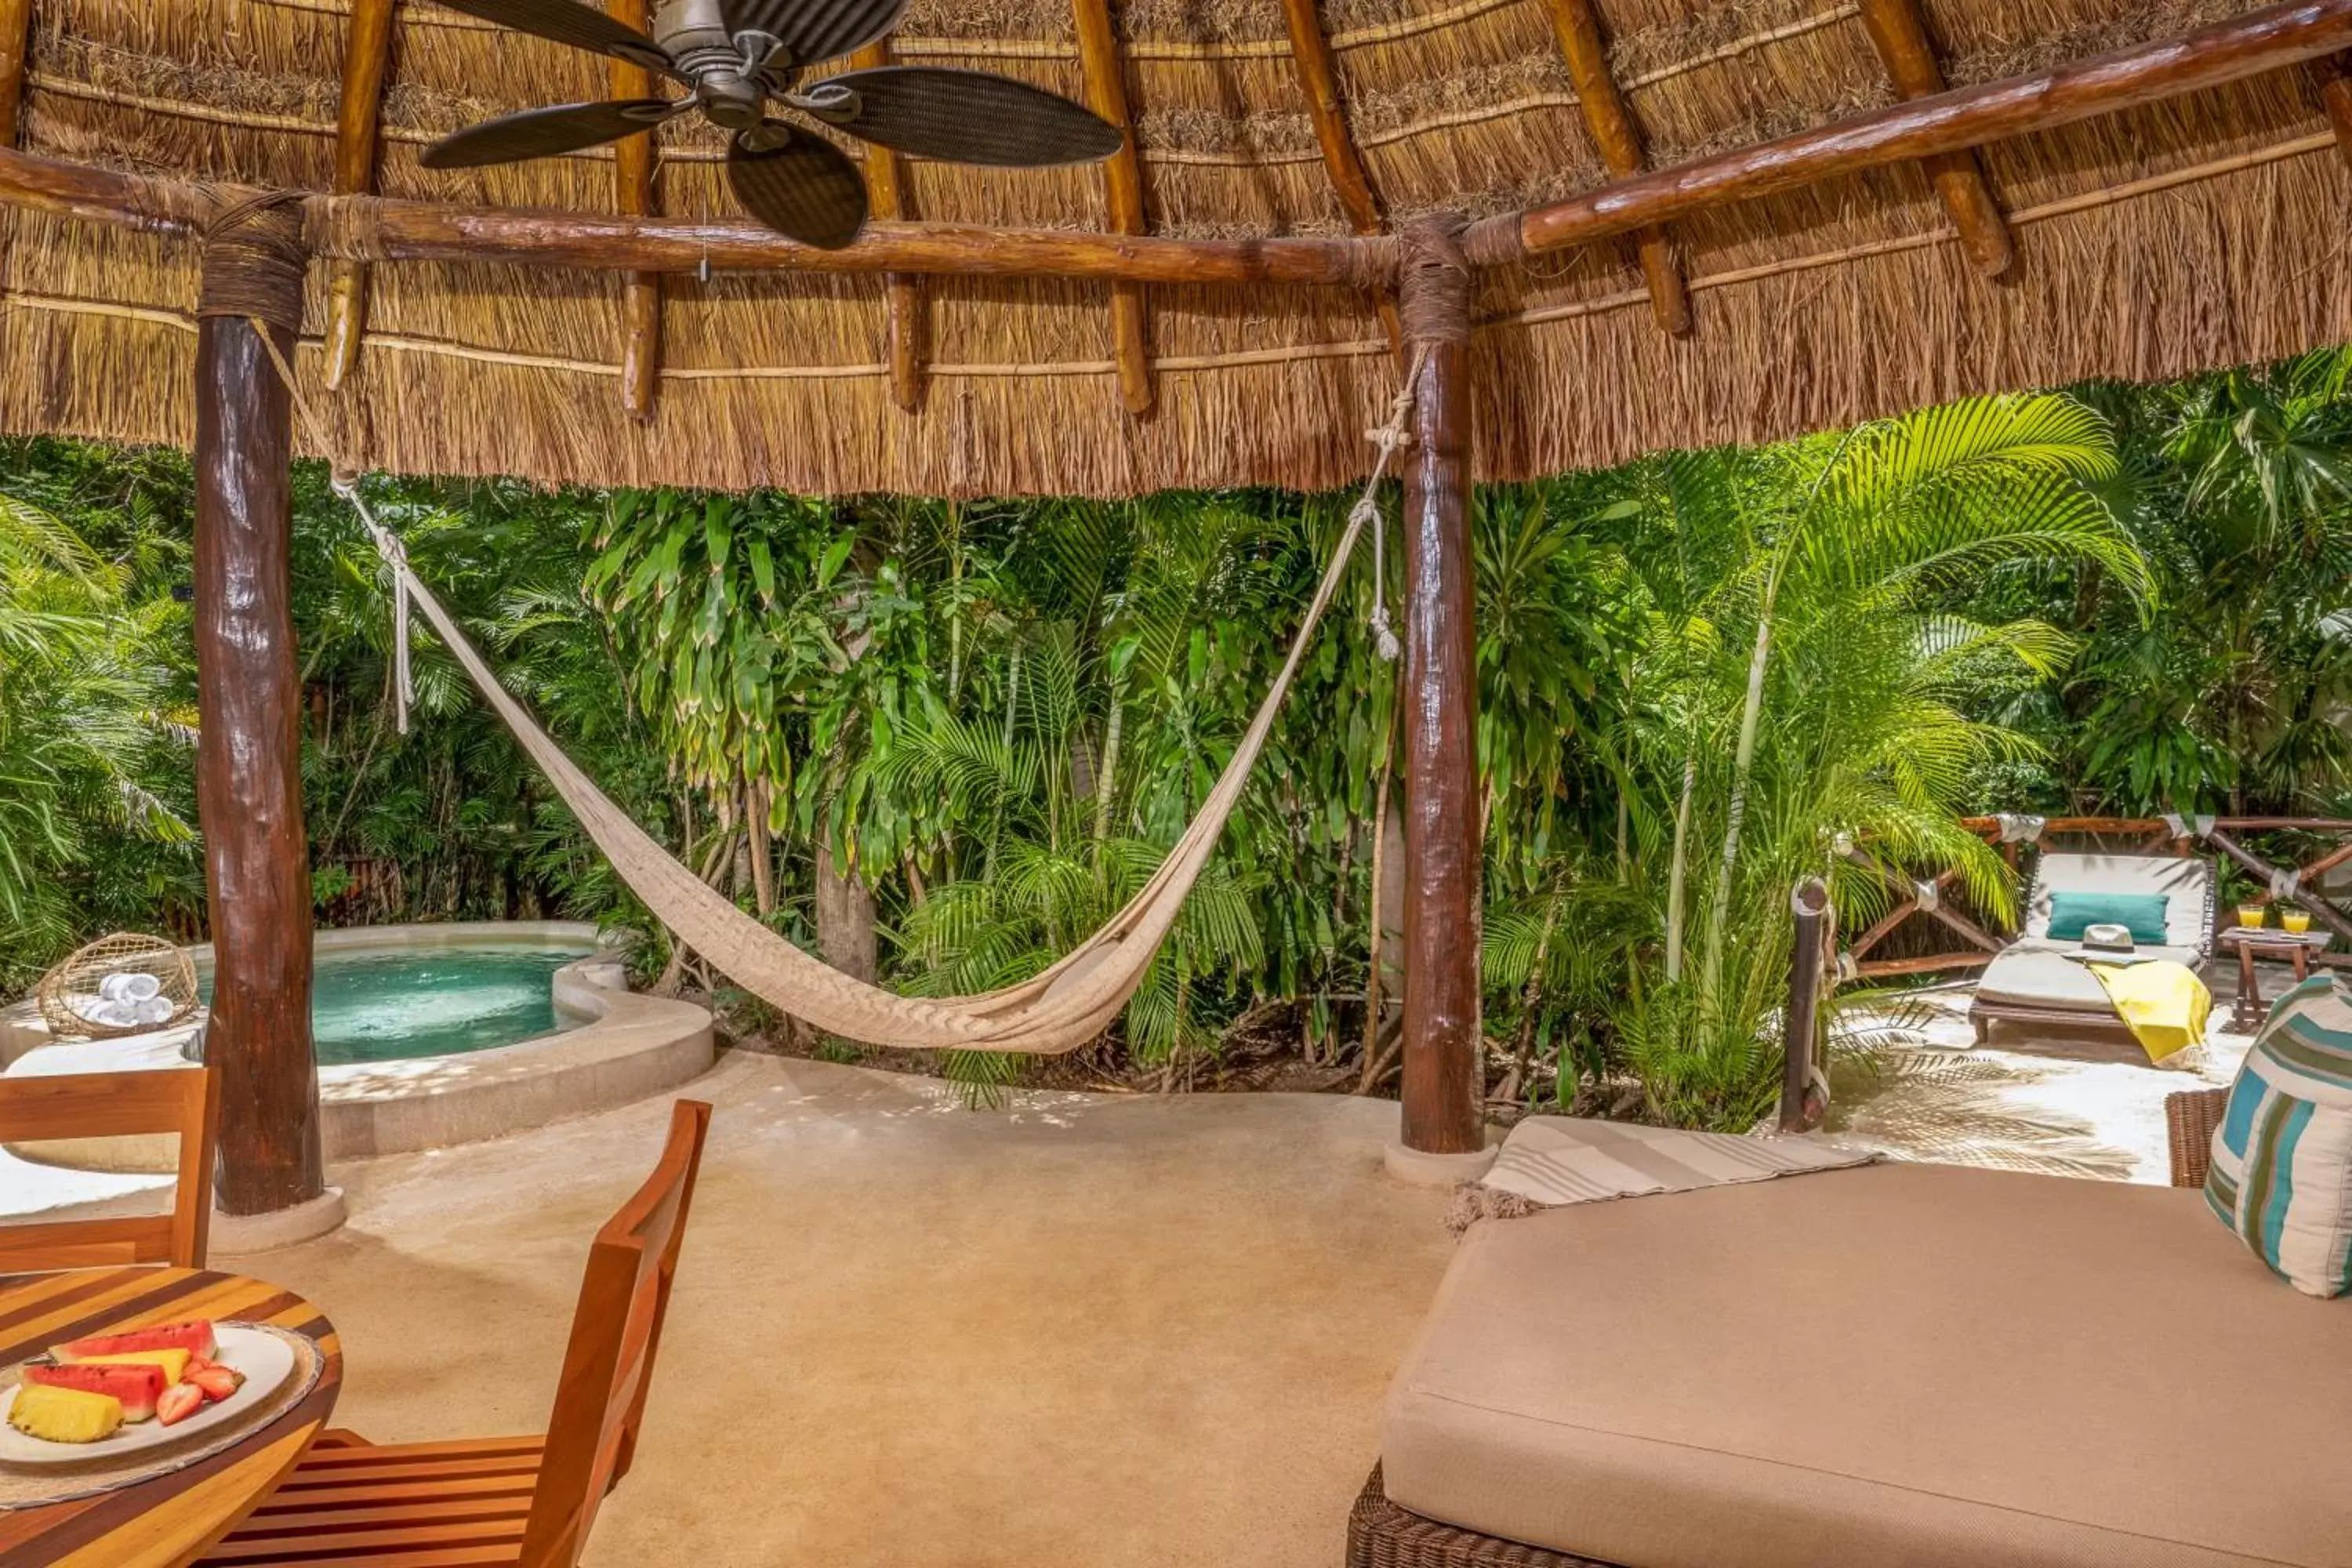 Patio in Viceroy Riviera Maya, a Luxury Villa Resort